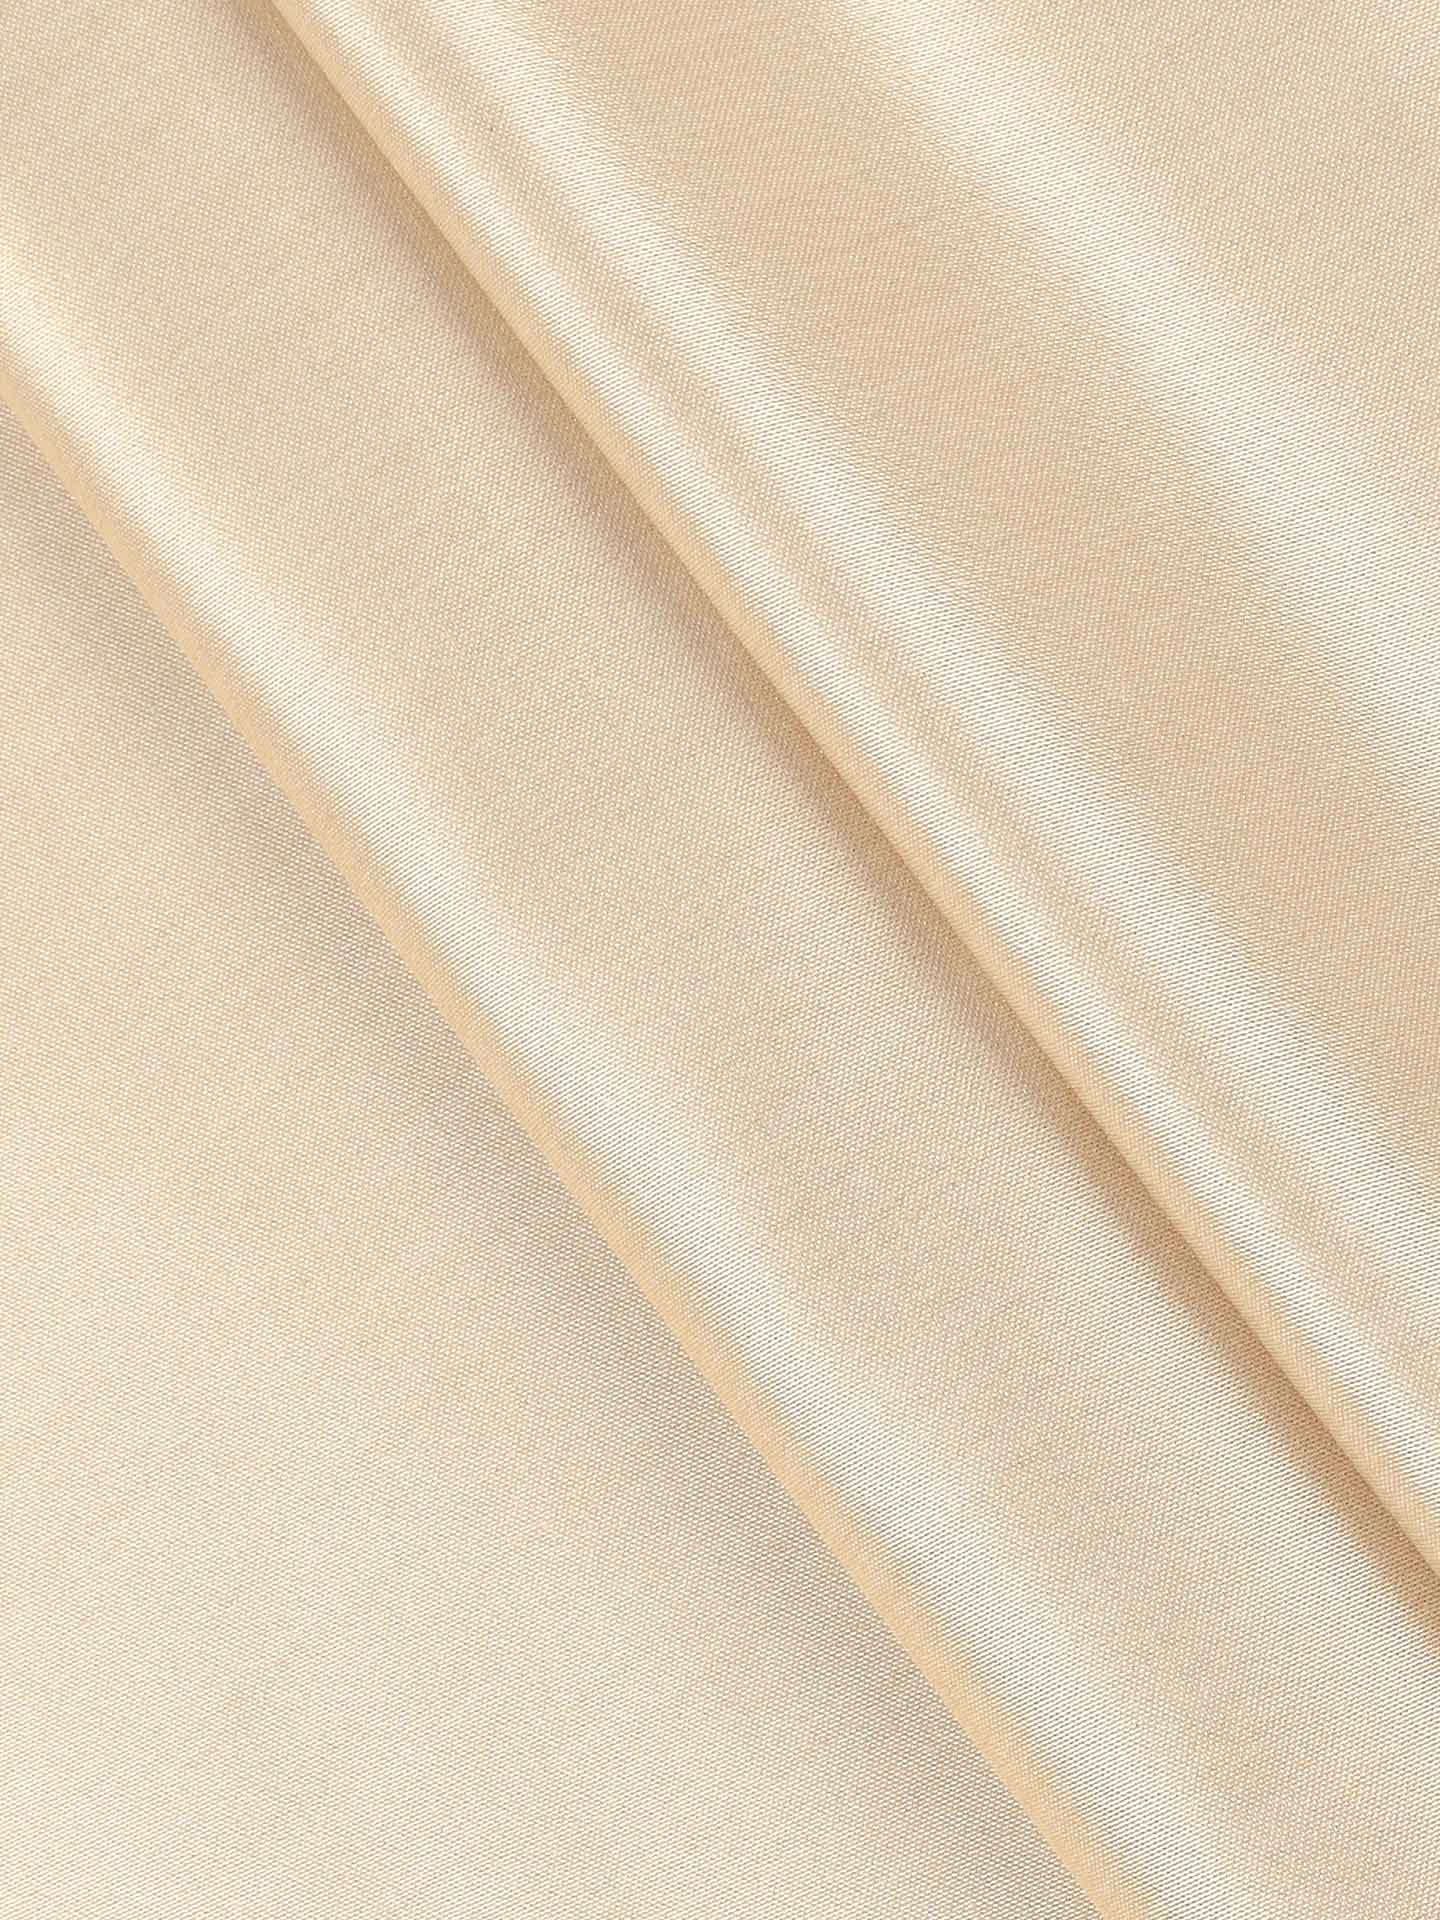 Cotton Colour Plain Pants Fabric Sandal Style Craft-Pattern view